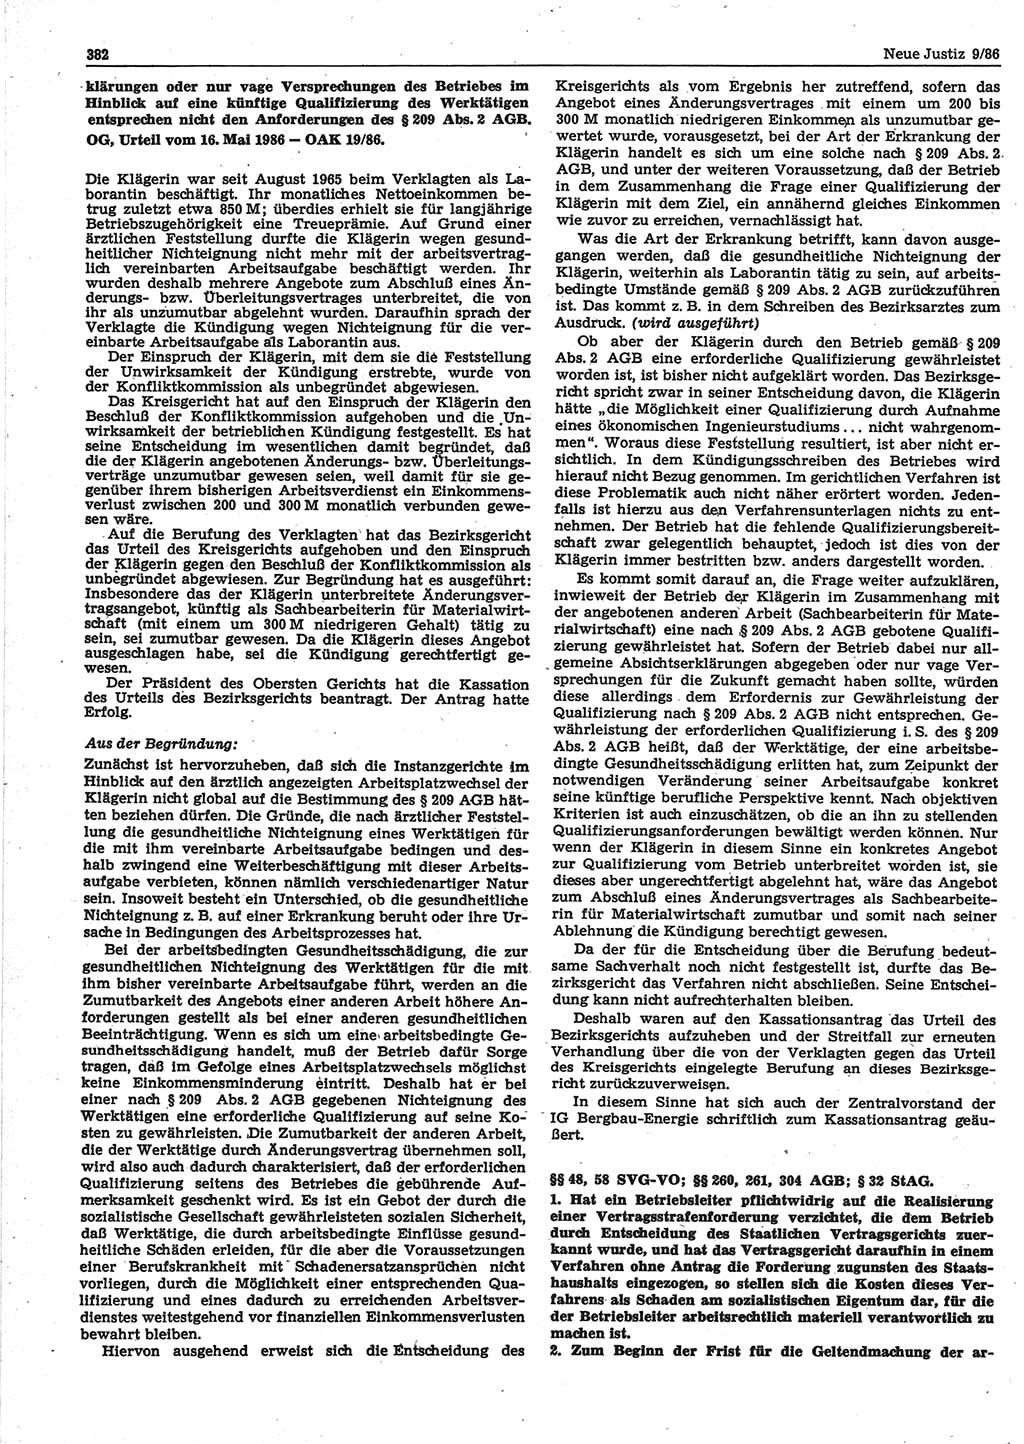 Neue Justiz (NJ), Zeitschrift für sozialistisches Recht und Gesetzlichkeit [Deutsche Demokratische Republik (DDR)], 40. Jahrgang 1986, Seite 382 (NJ DDR 1986, S. 382)